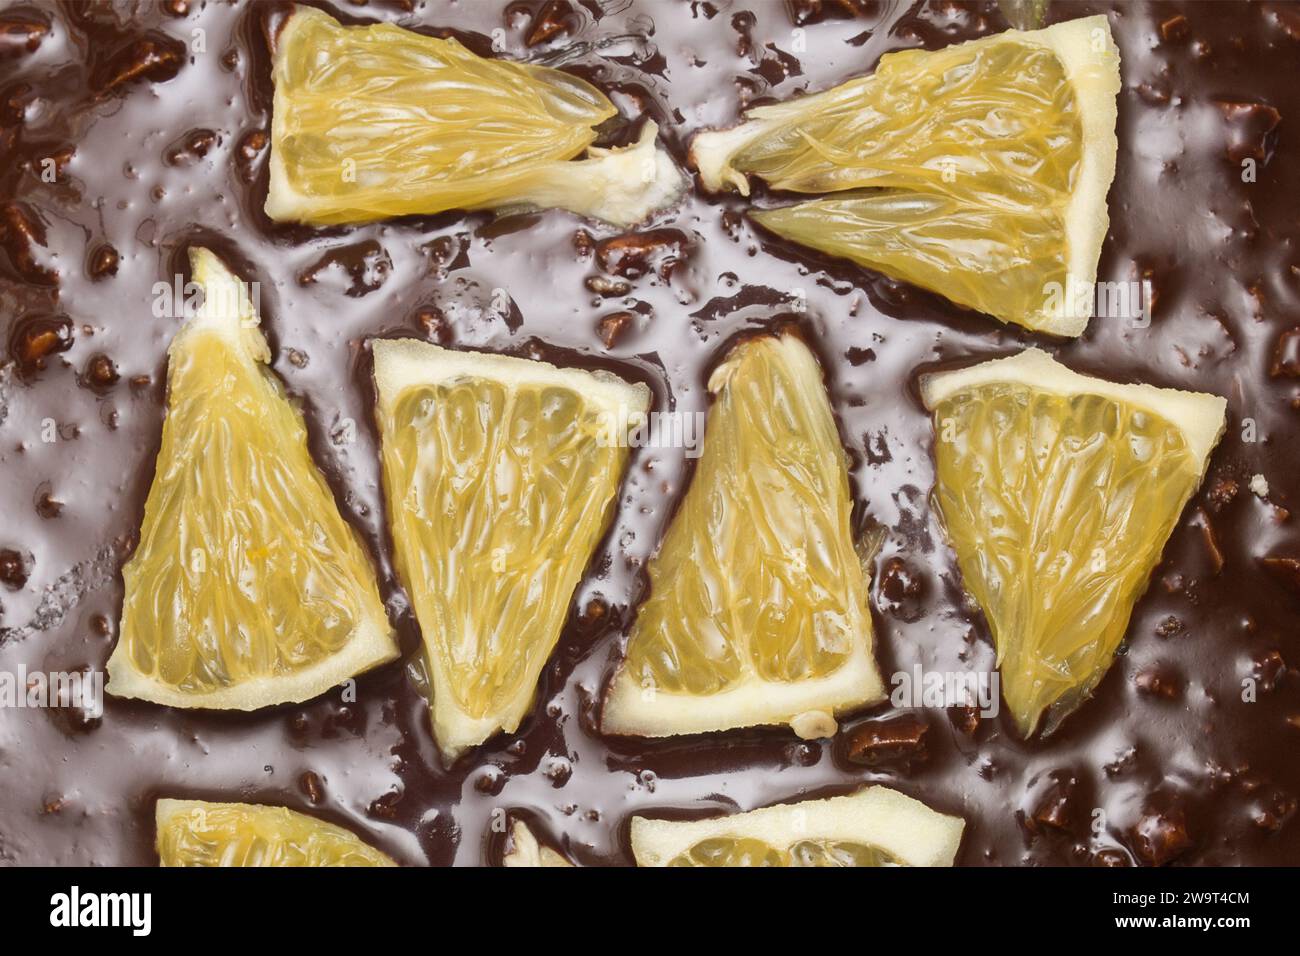 Nahaufnahme von Orangensegmenten auf einem Schokoladen-Kakaokuchen mit Mandeln. Texturen und Speisen. Stockfoto